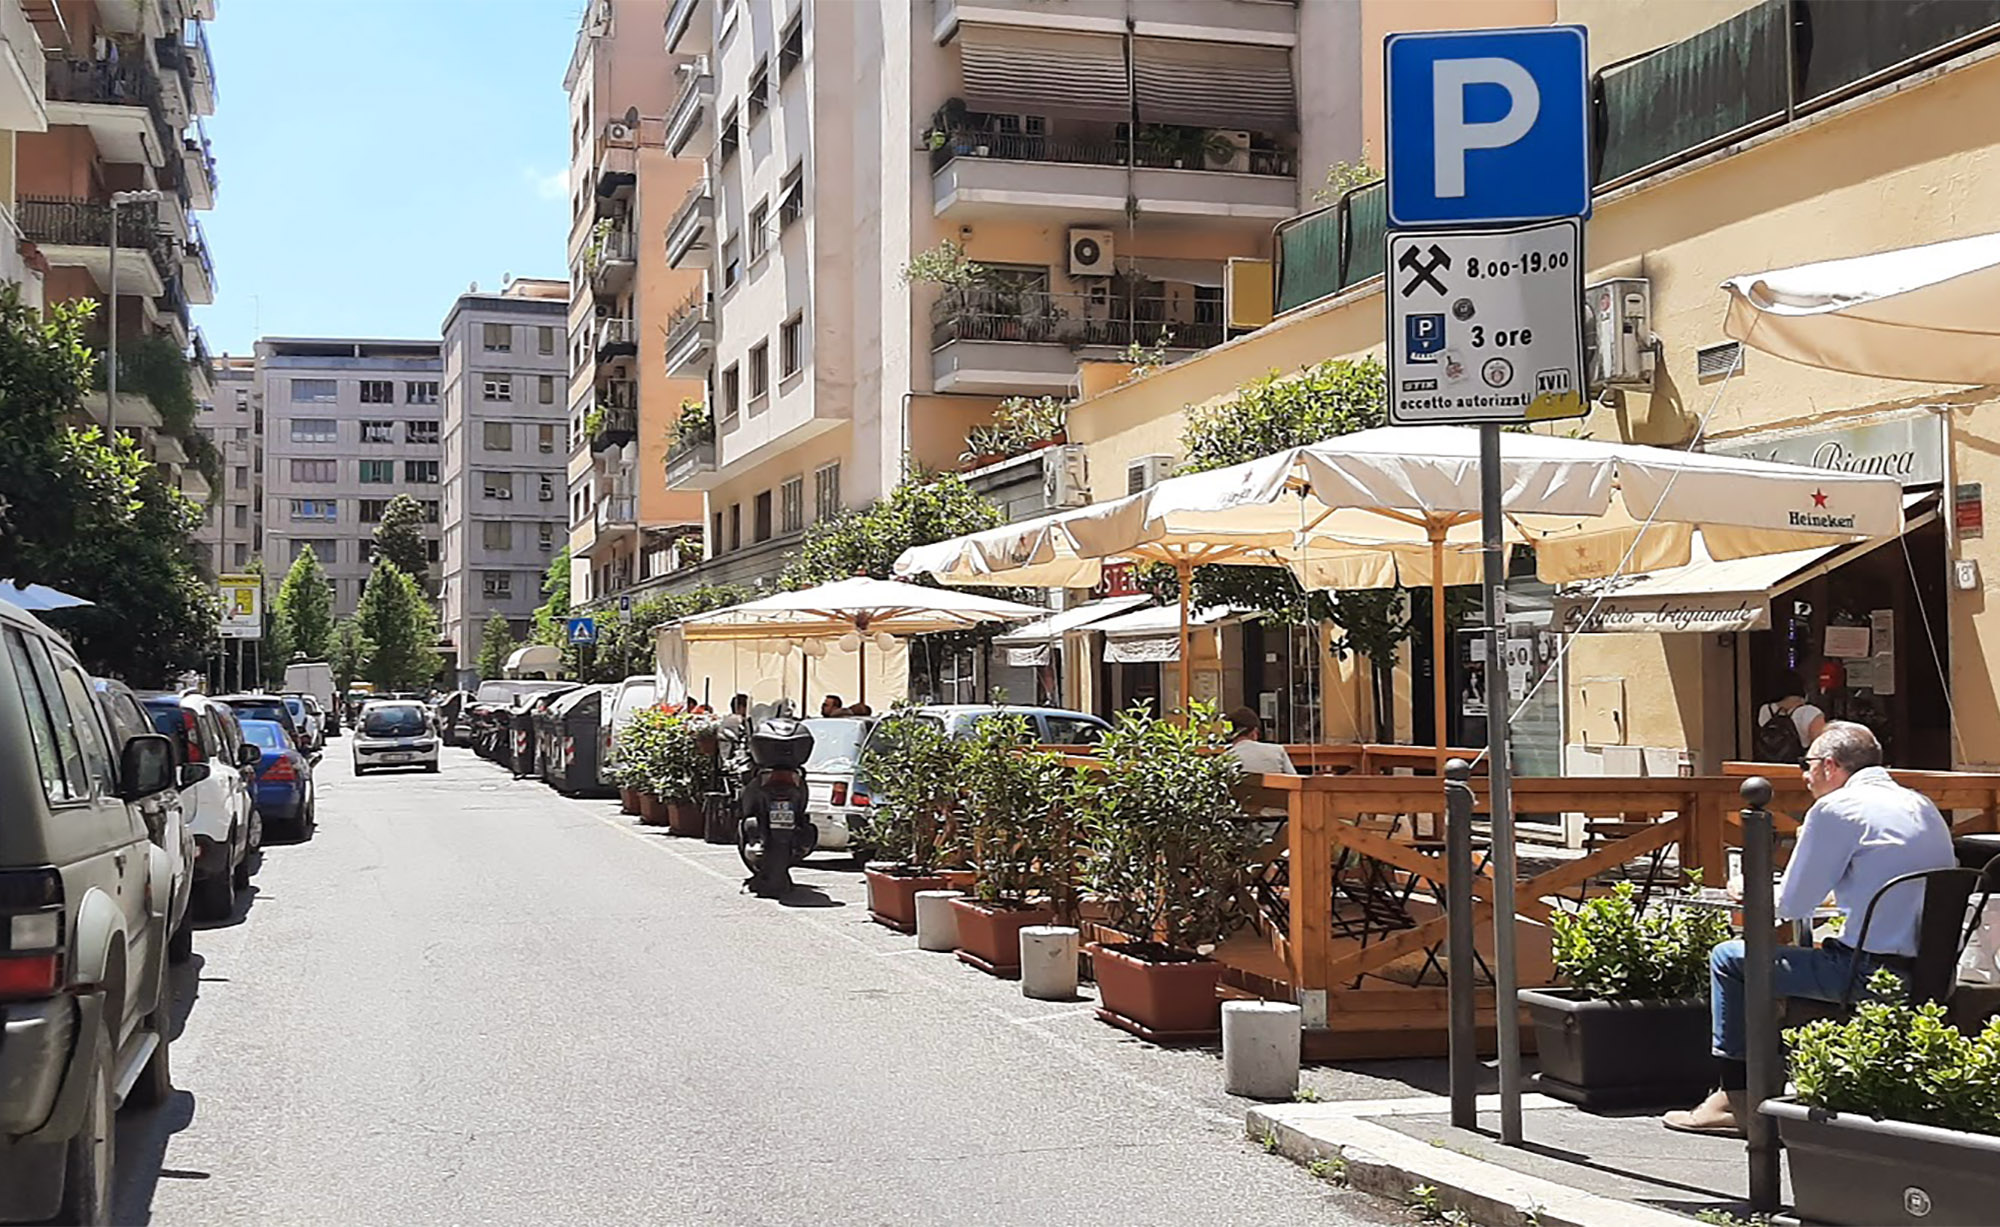 Outdoor Dining Versus Parking in Rome - Bloomberg